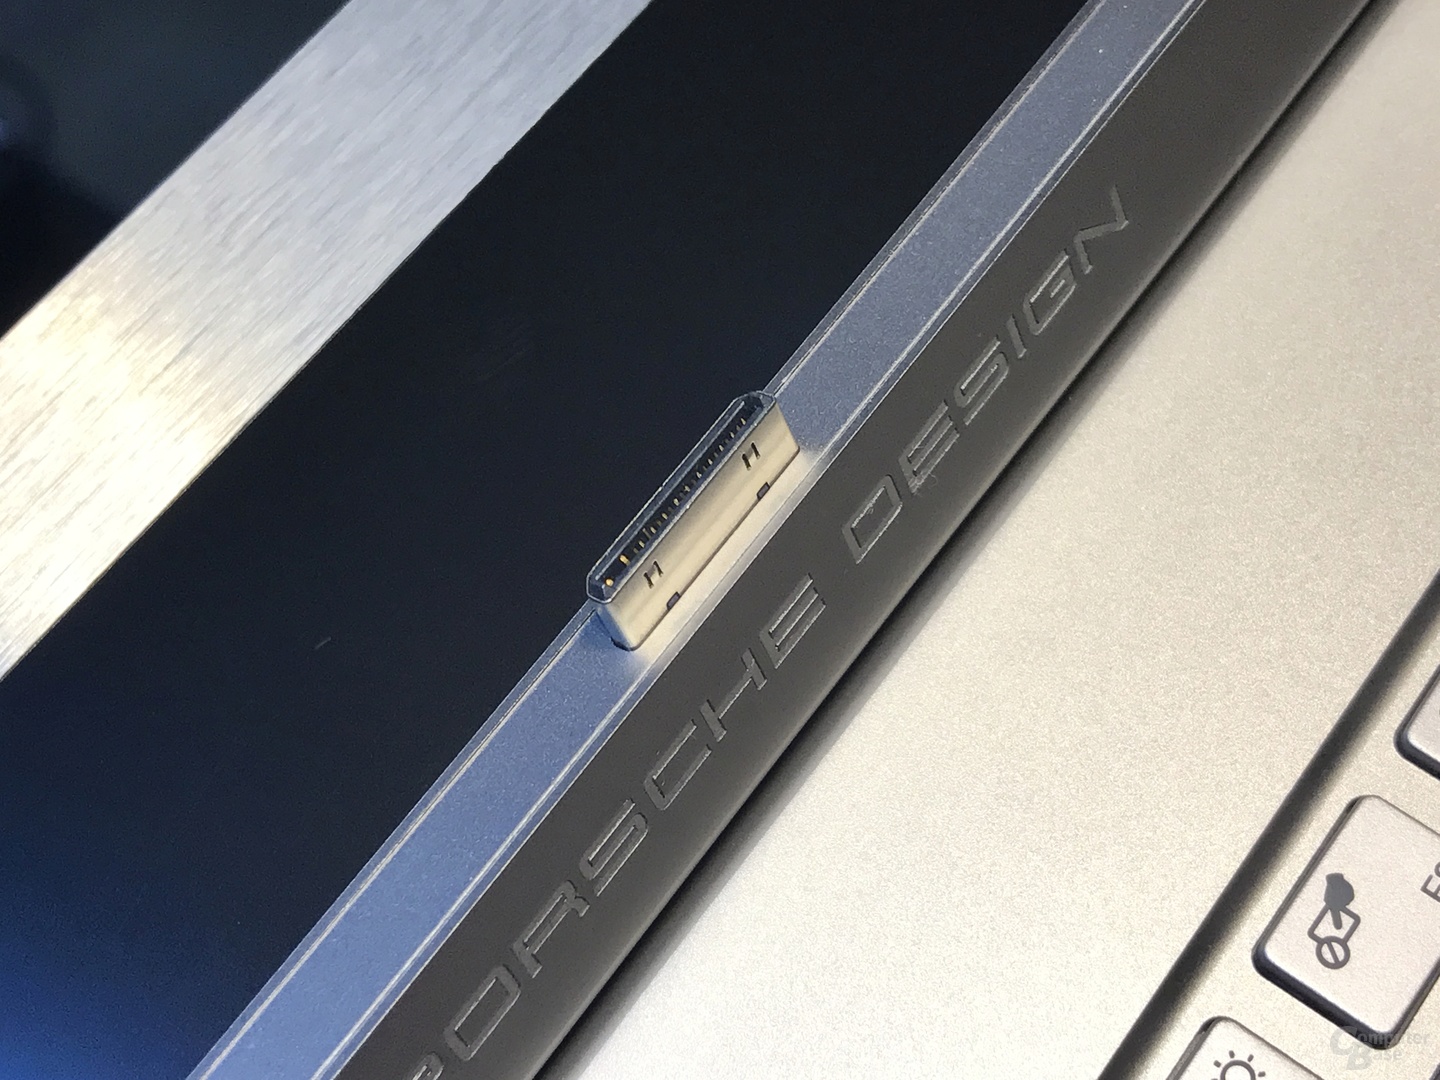 Datenverbindung zwischen Tablet und Tastatur